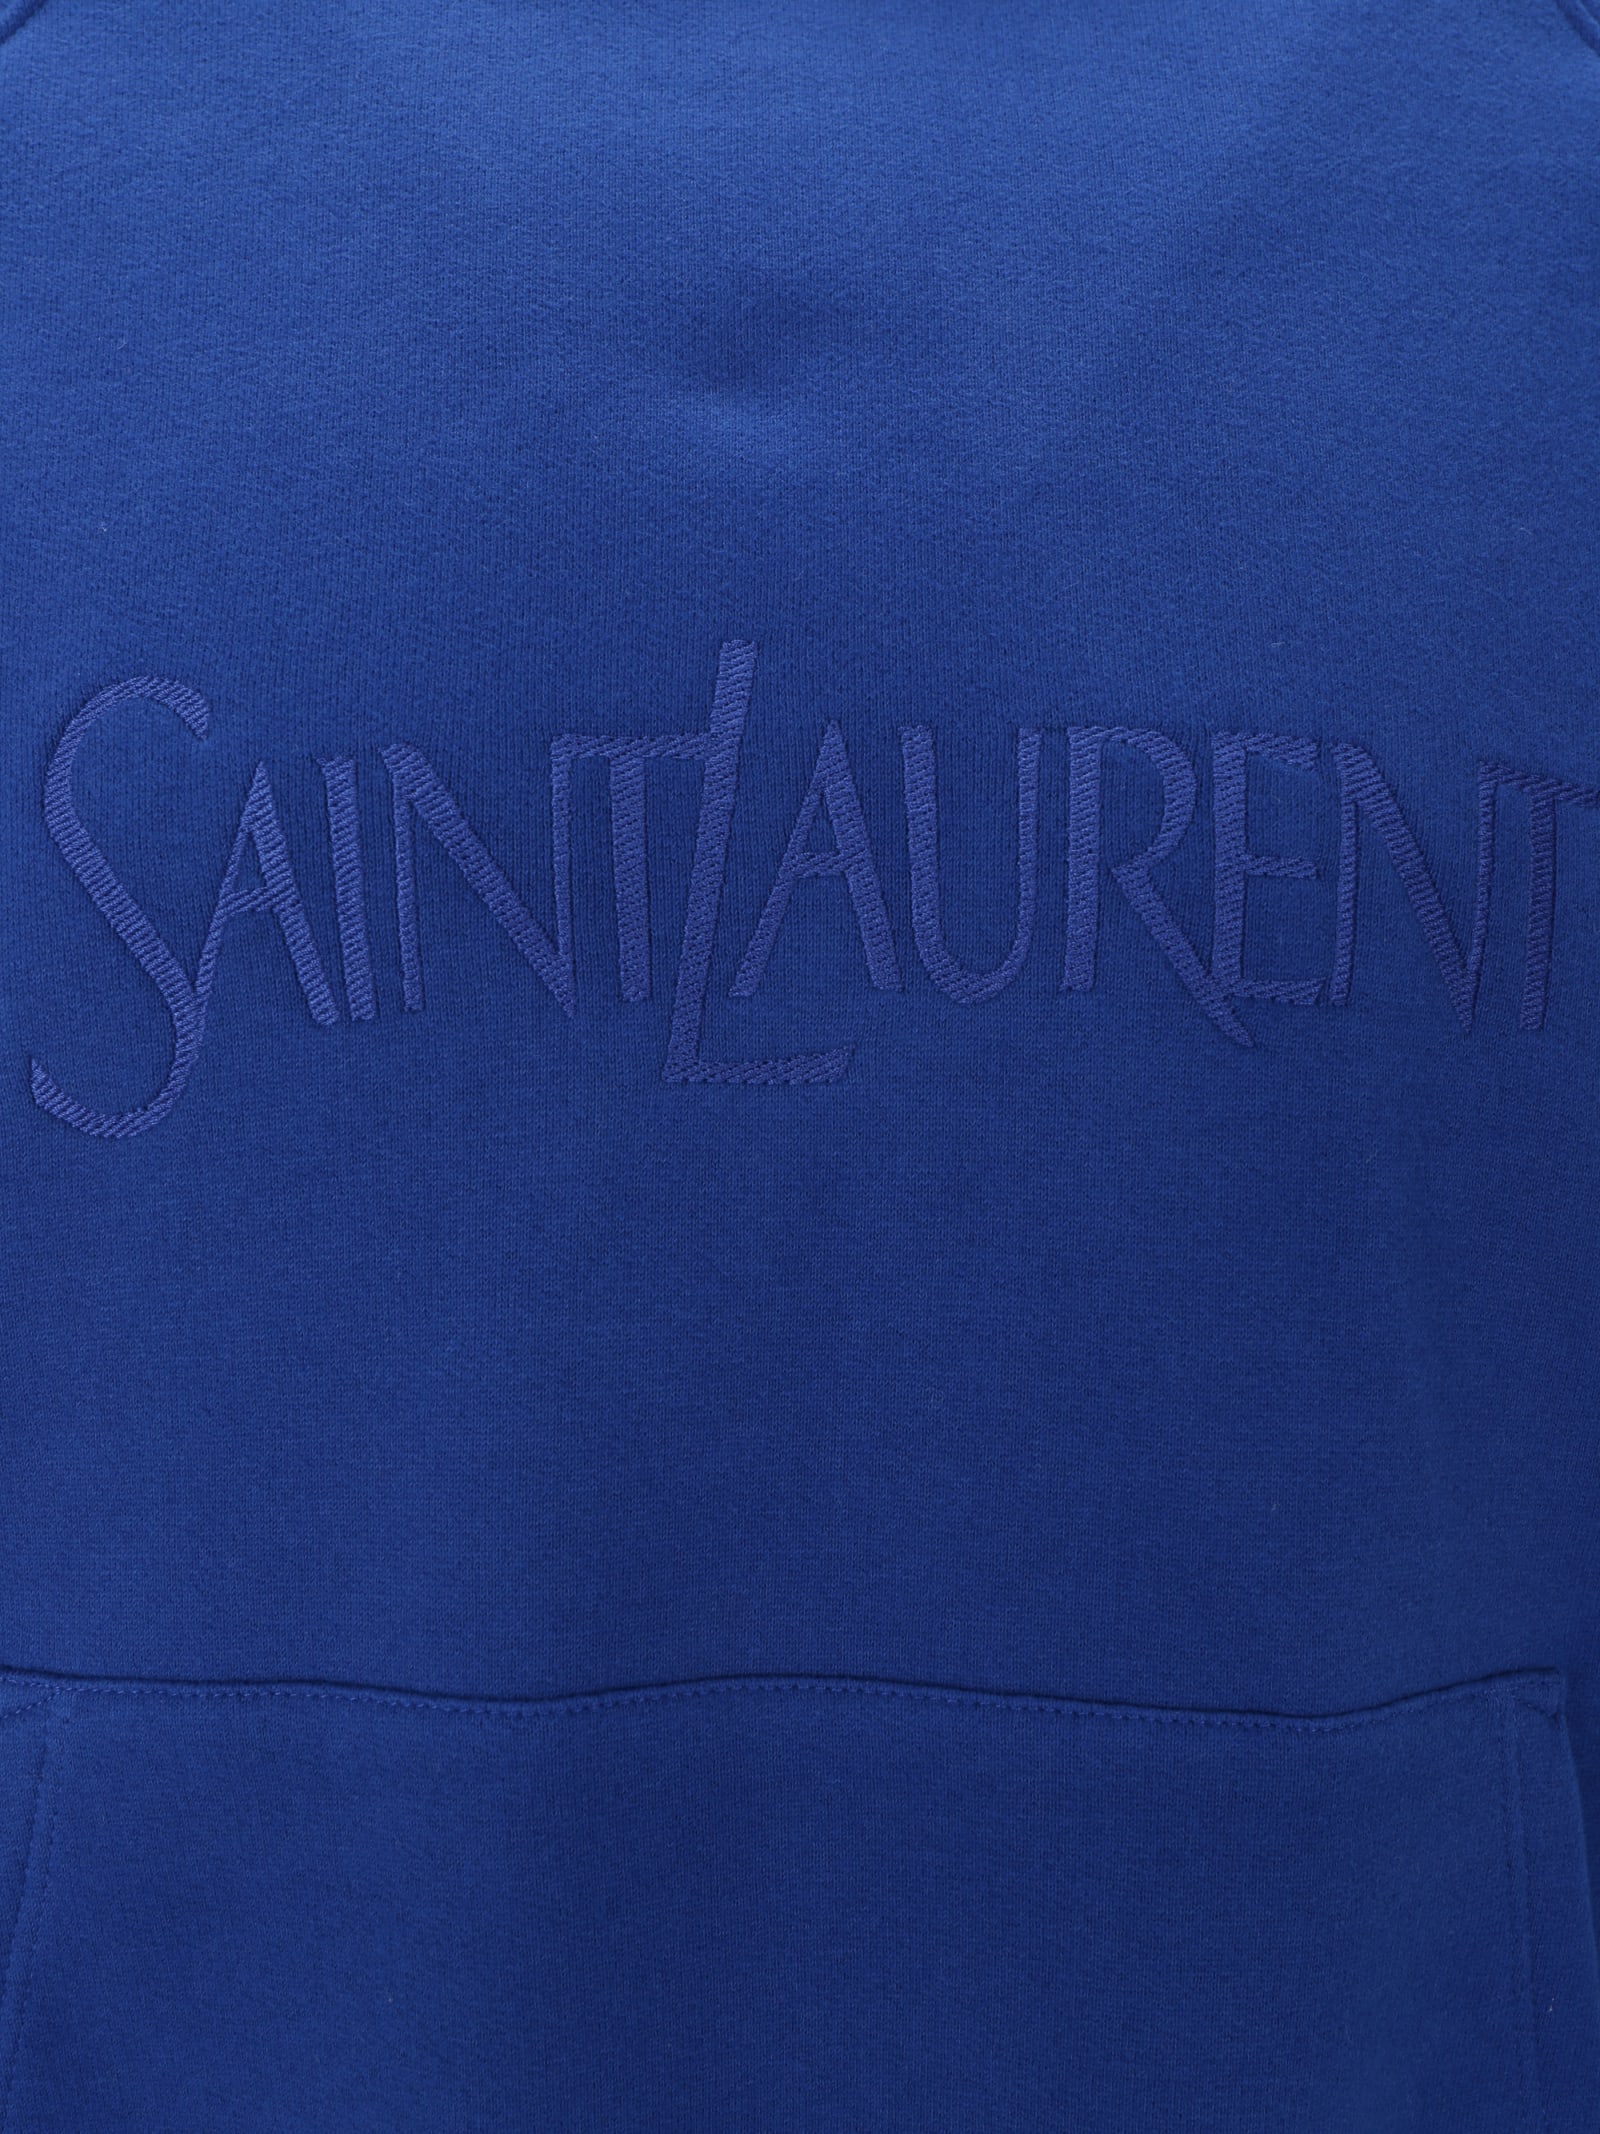 Shop Saint Laurent Hoodie In Blue